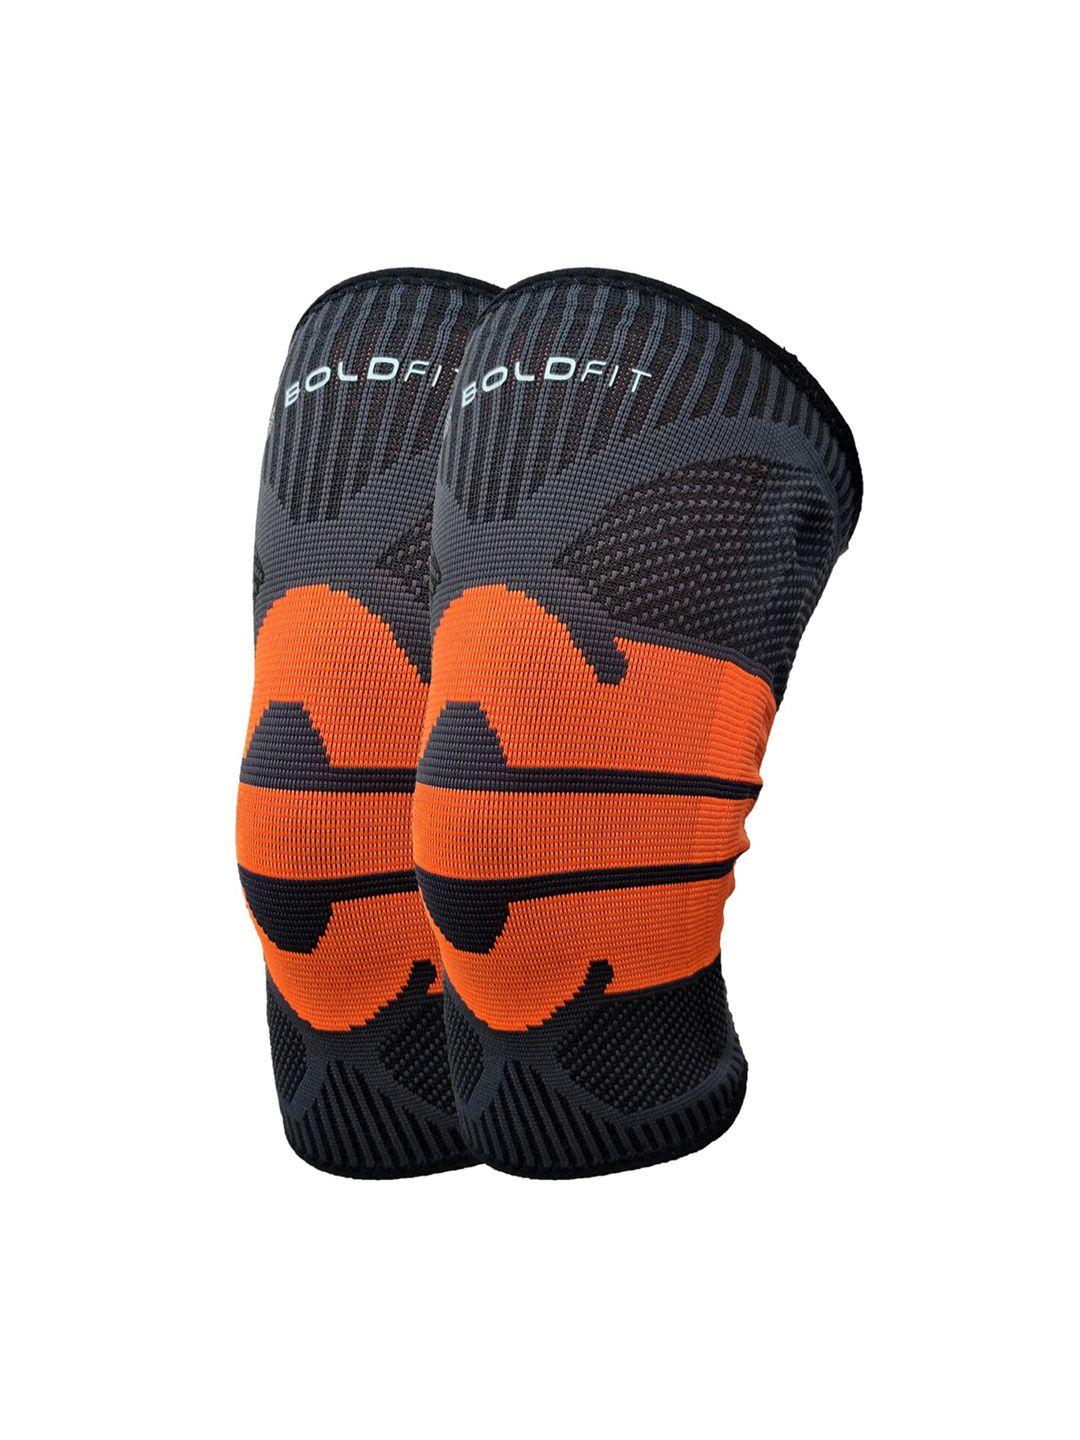 boldfit orange & black printed knee support cap